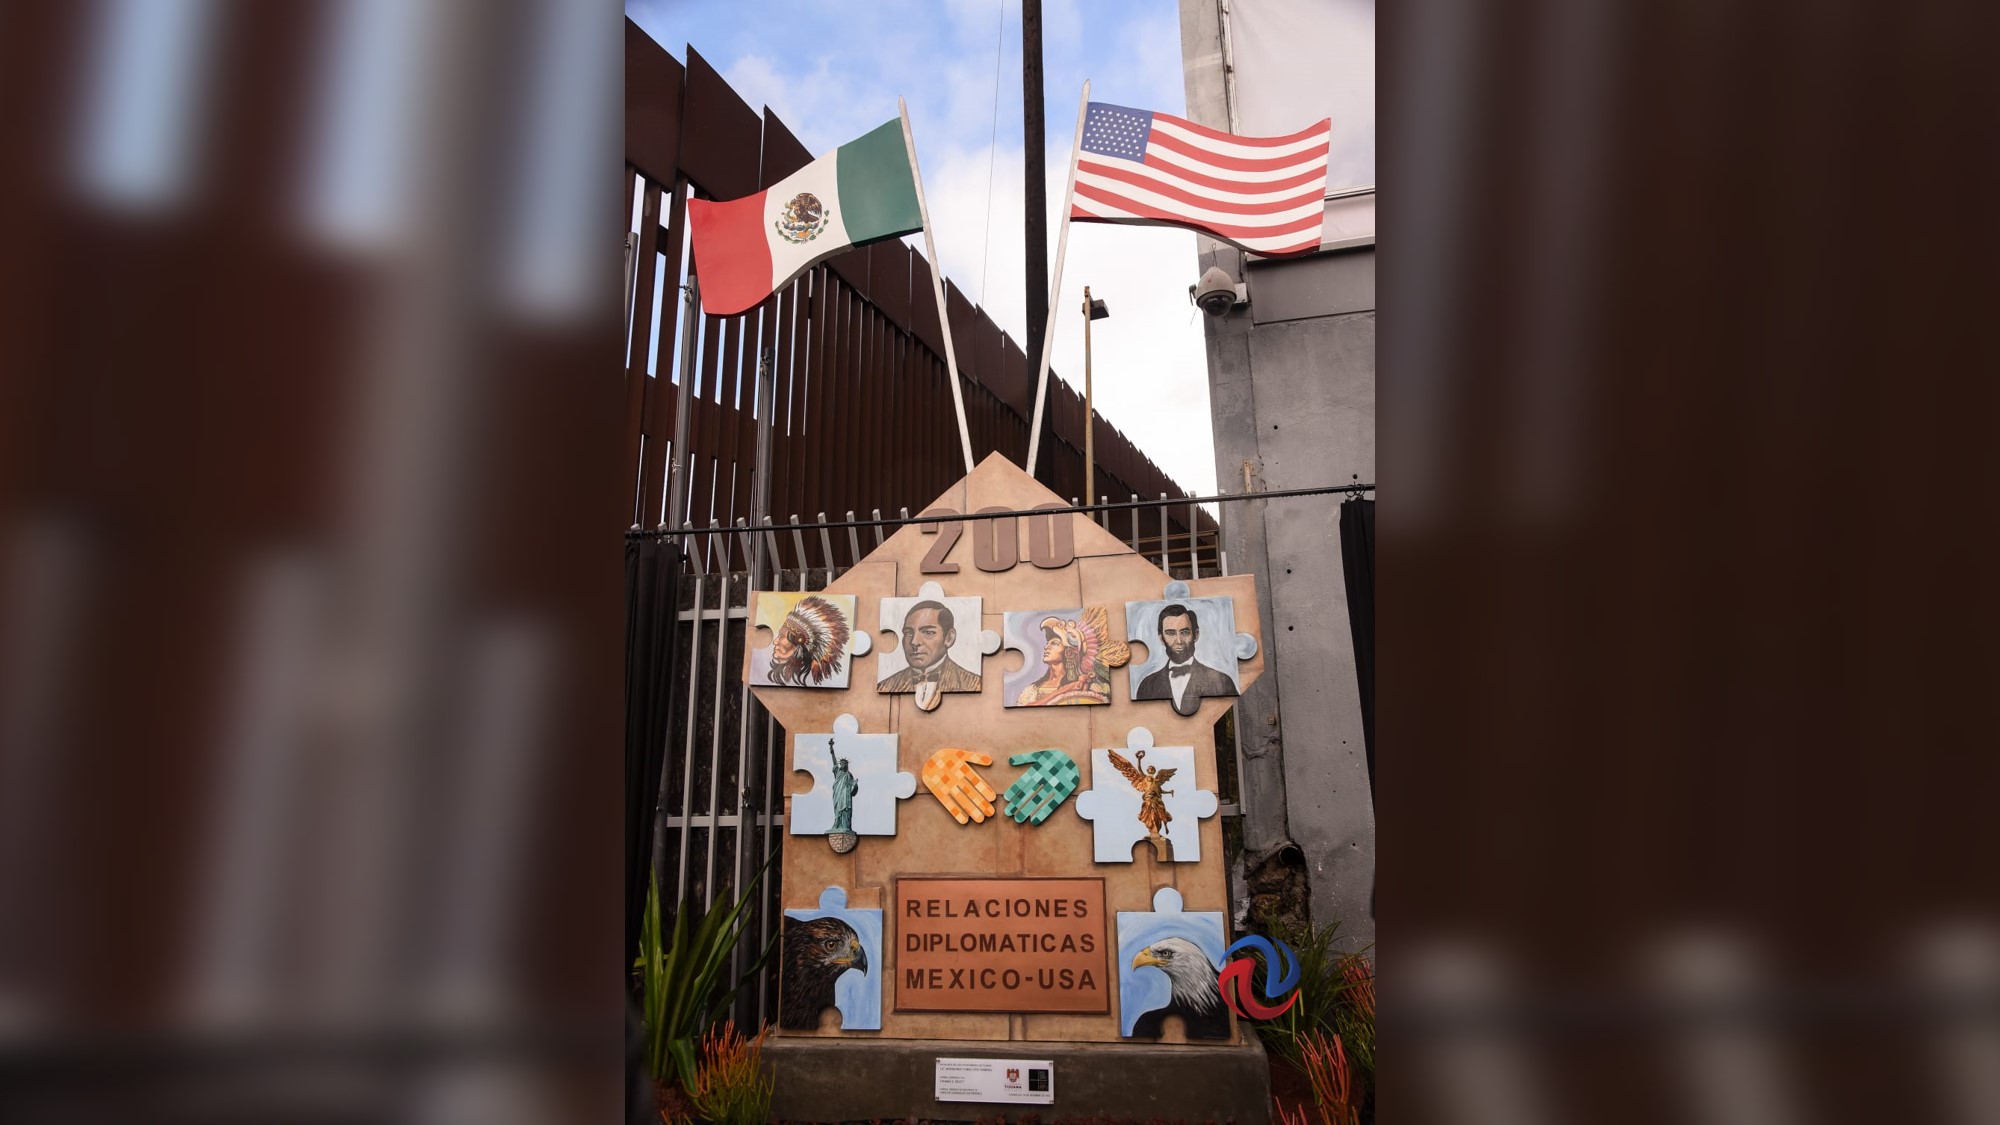 Develan escultura por 200 años de relaciones diplomáticas entre México y EU